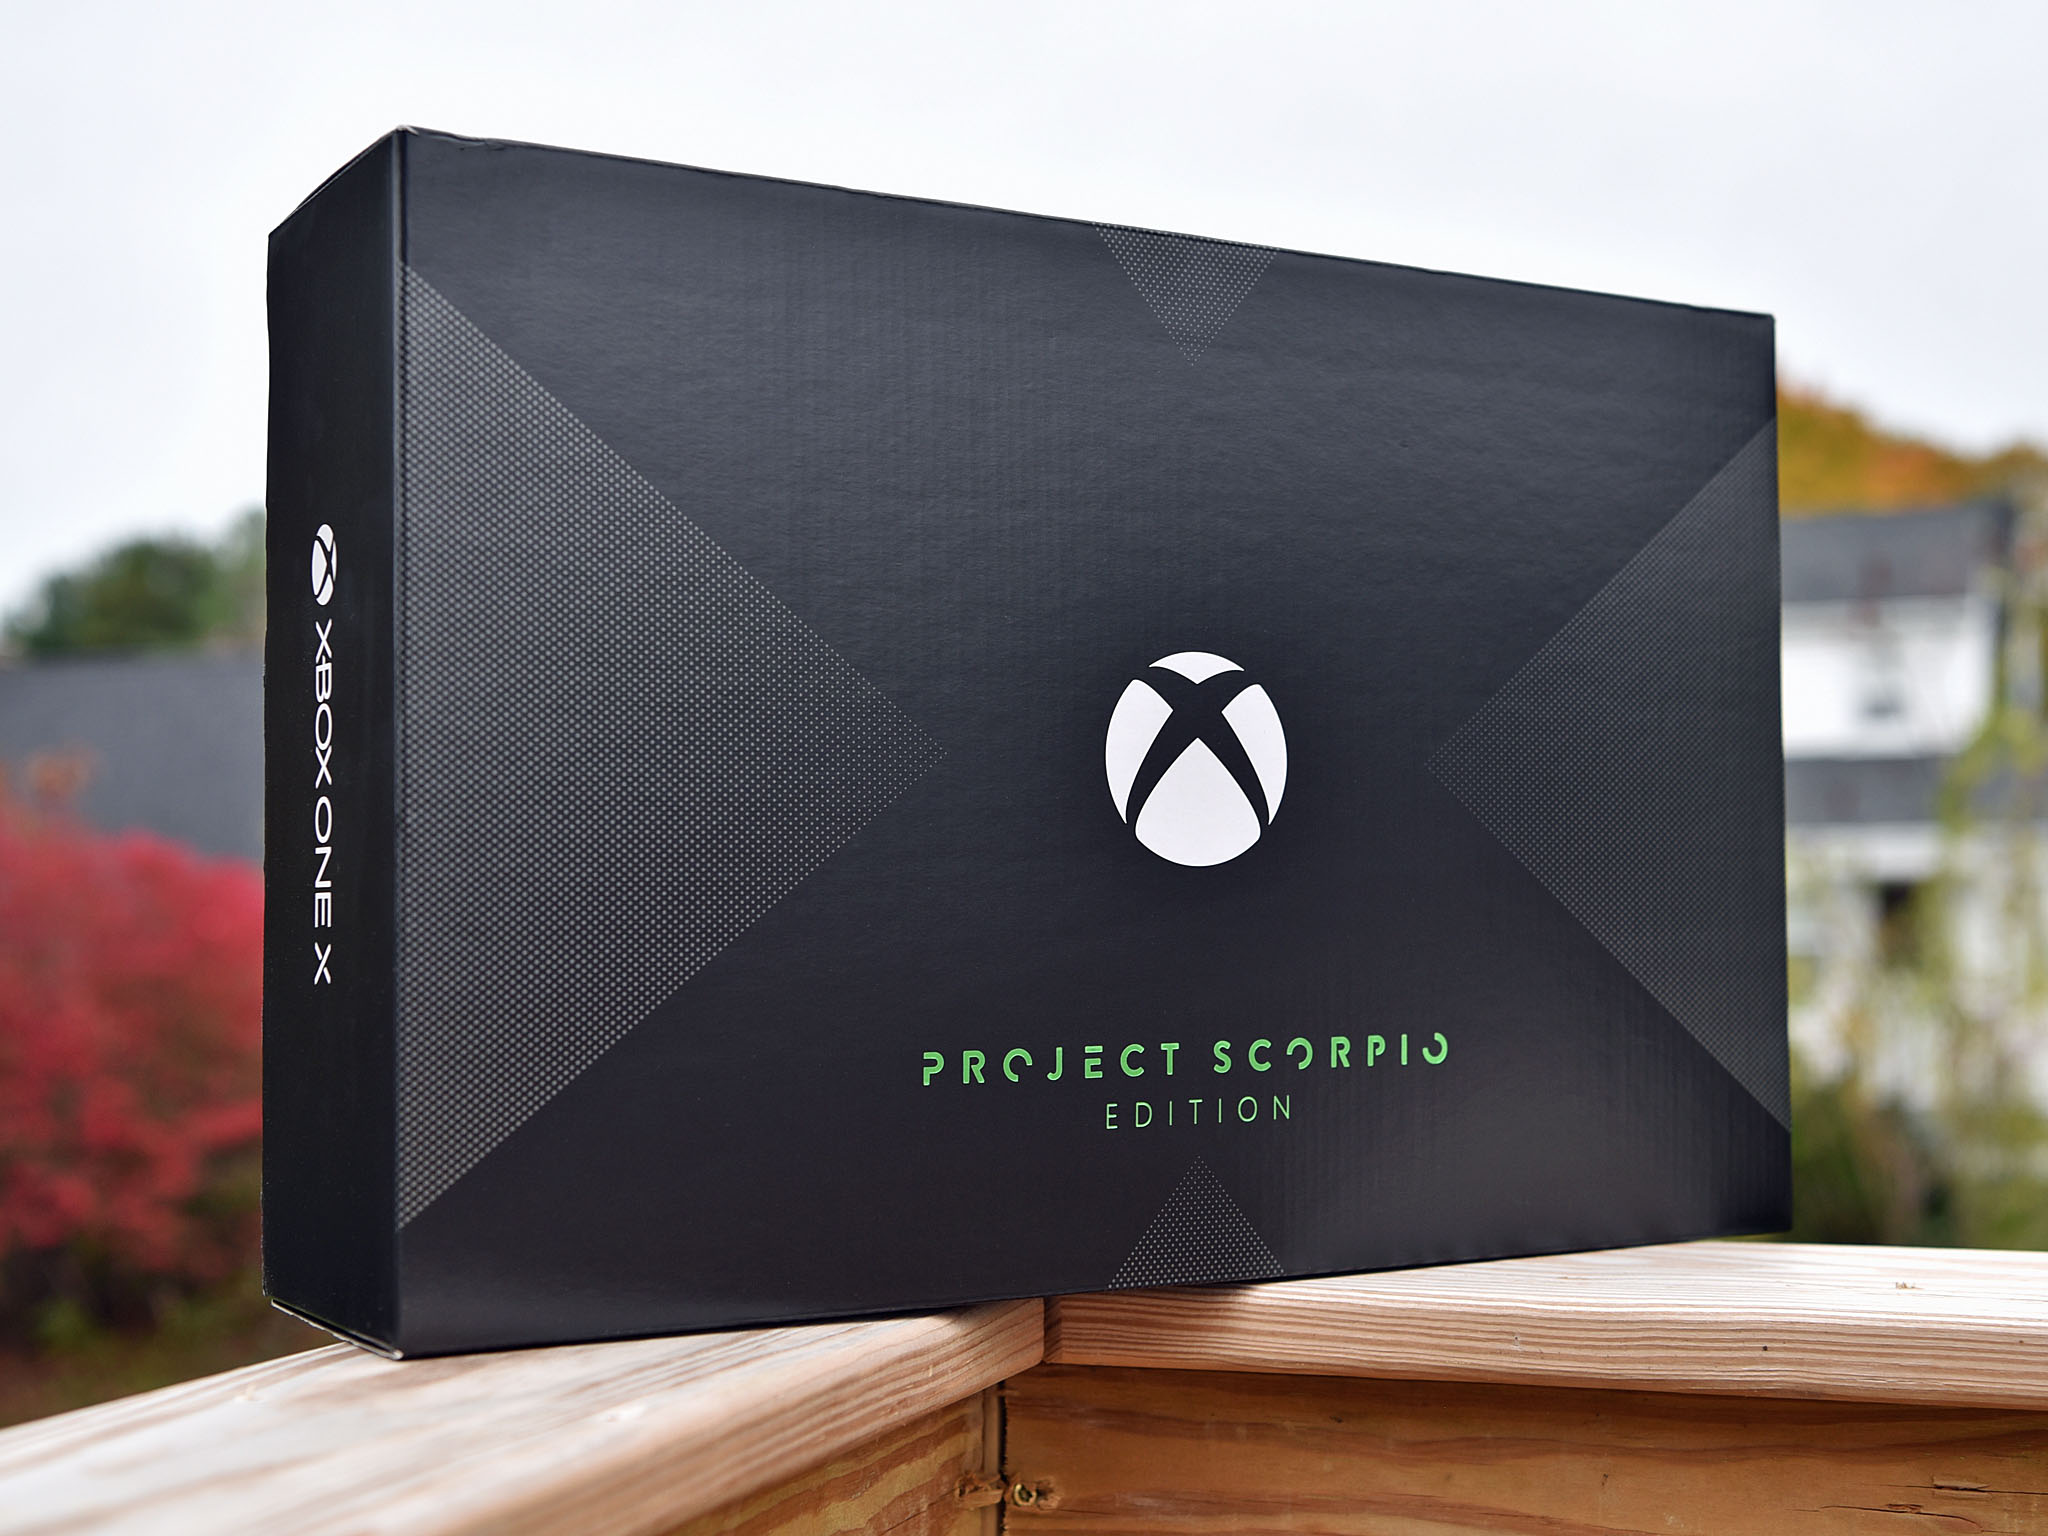 Xbox-One-X-Scorpio-BOX-hero_0.jpg